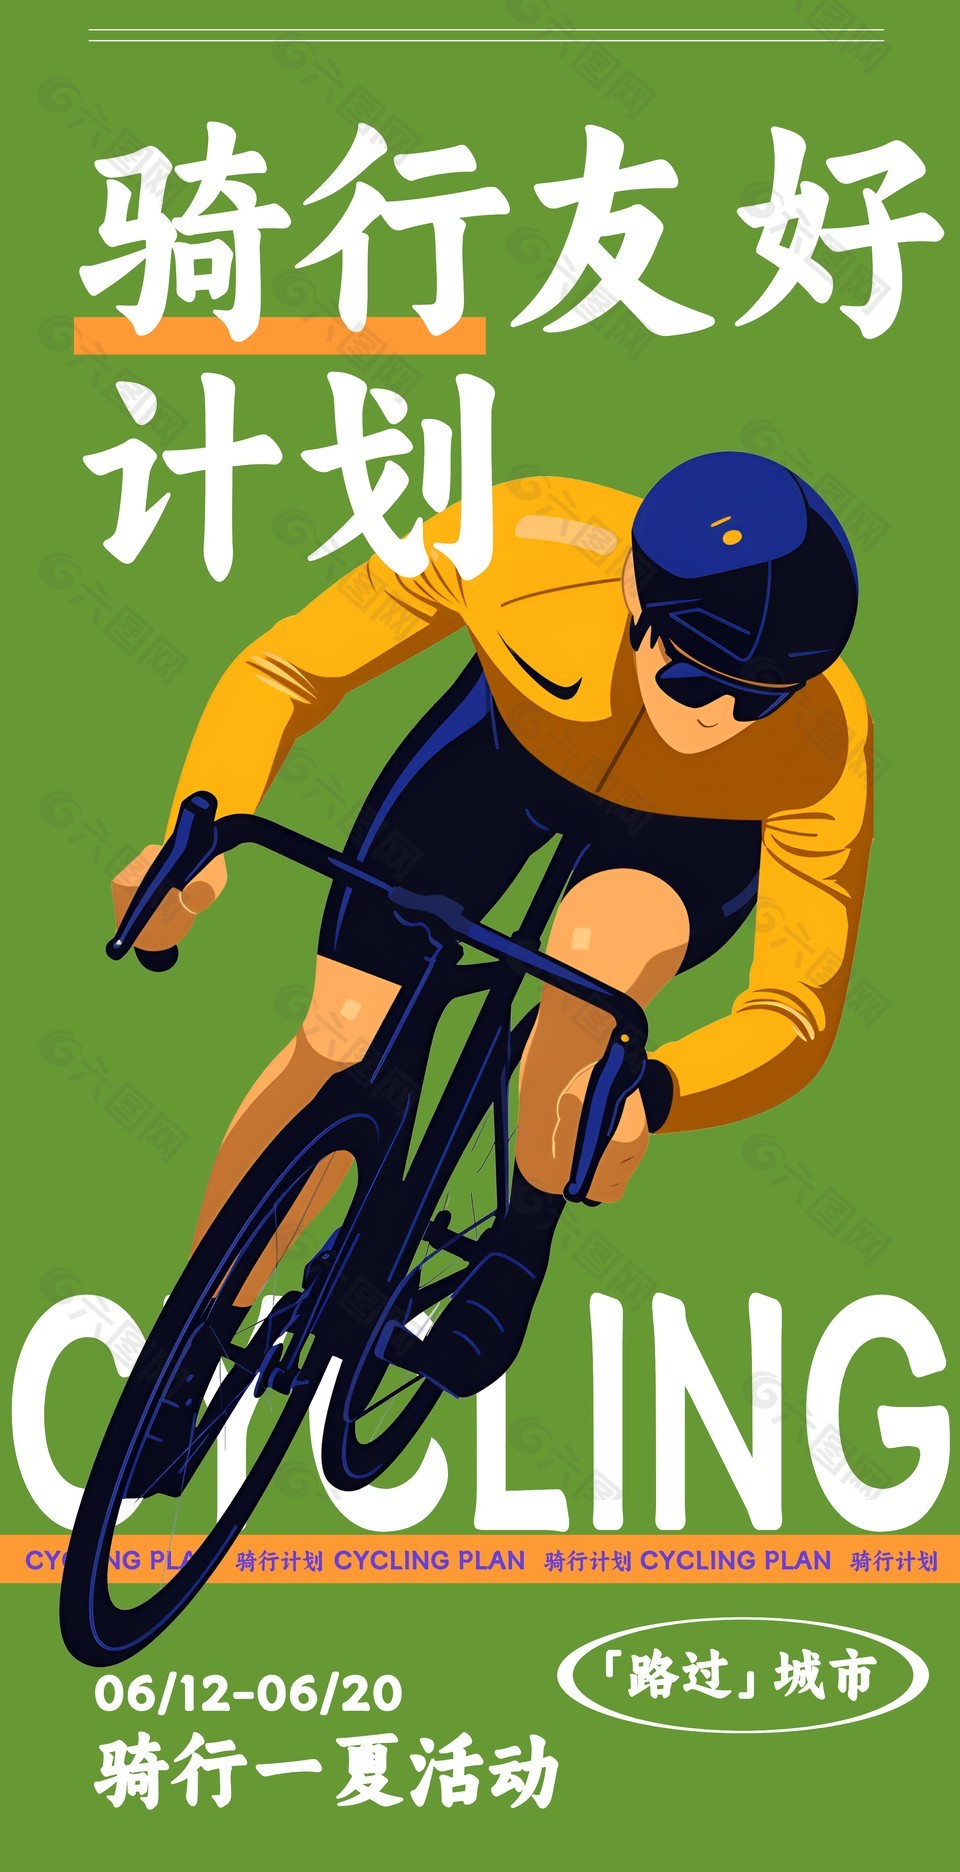 夏日骑行计划活动绿色卡通简约宣传海报